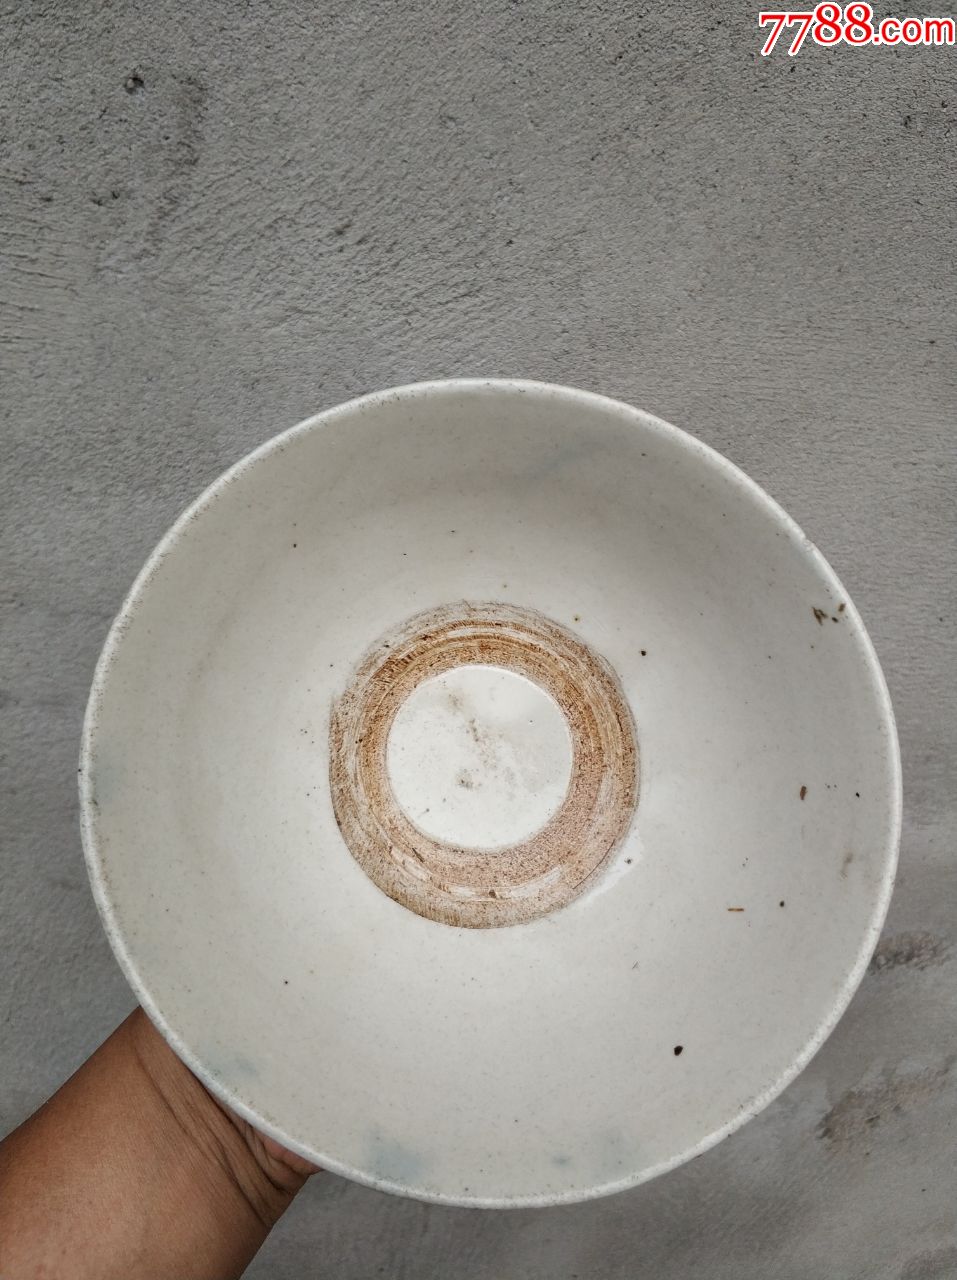 六七十年代瓷器碗,有一个小磕,没有冲线,口径16.5厘米